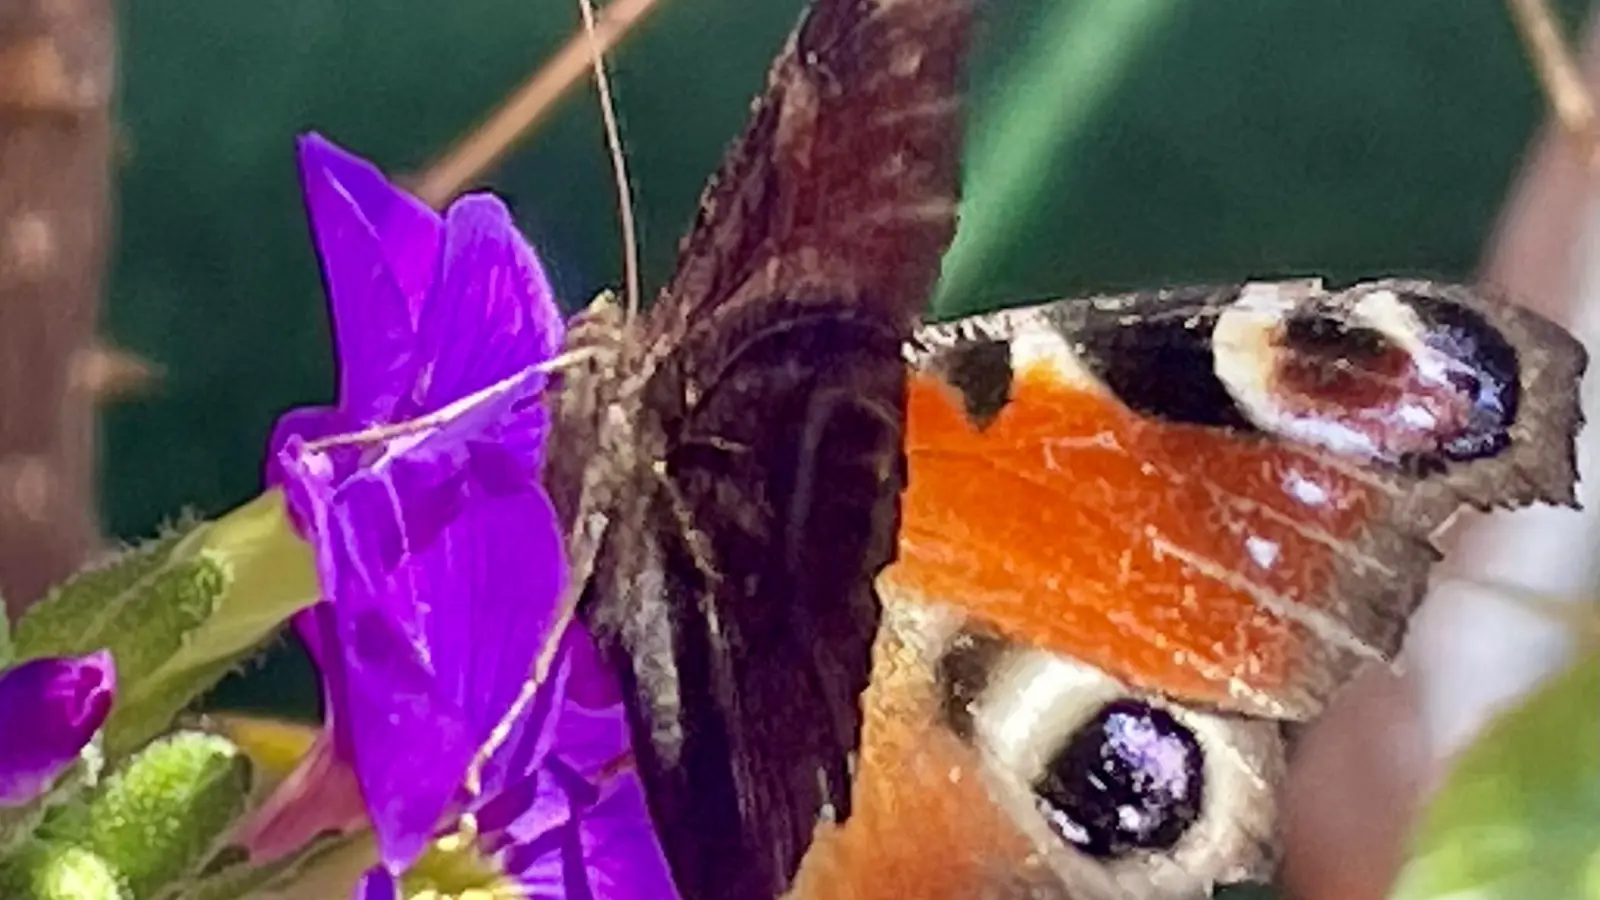 Schmetterlinge beobachteten die Teilnehmenden am diesjährigen Insektensommer kaum. (Foto: bb)